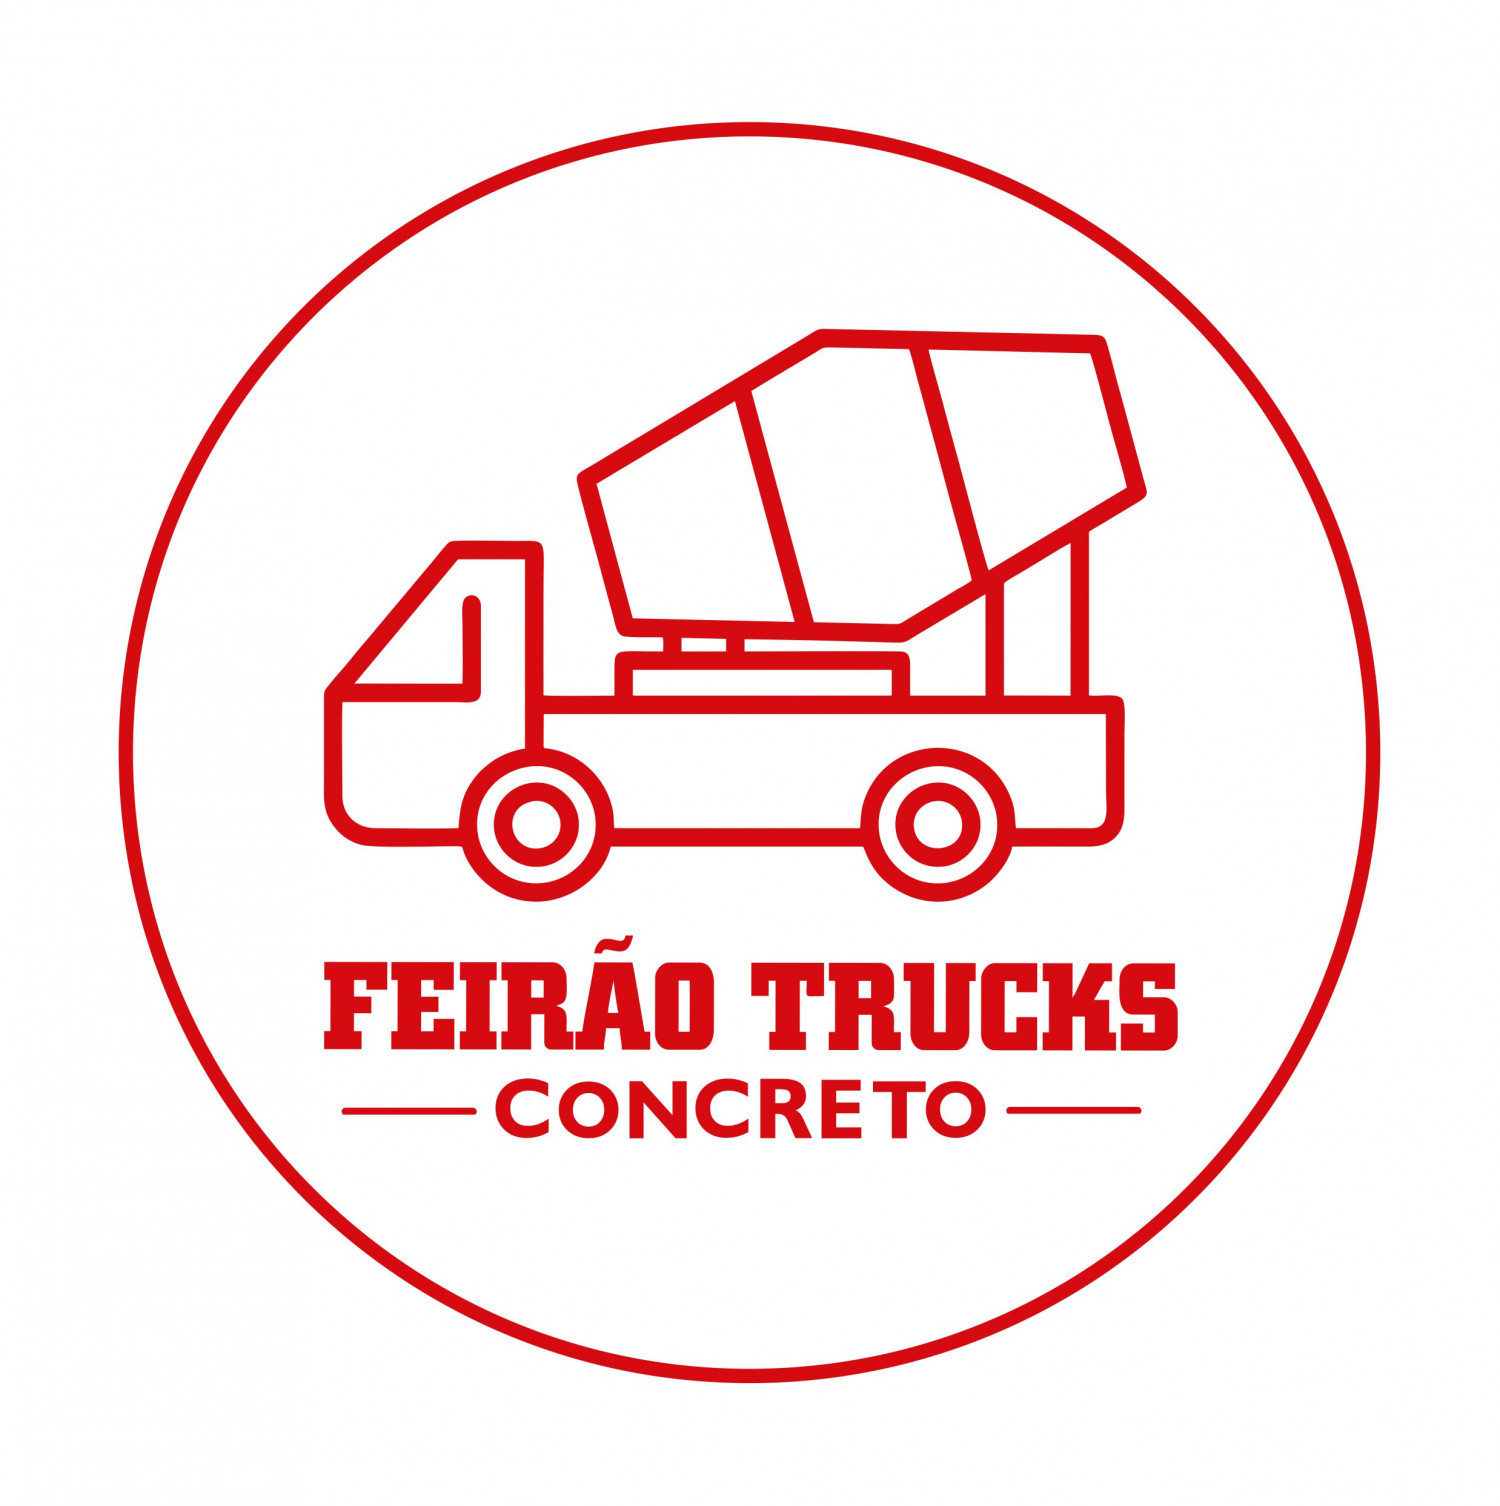 Feirão trucks Concreto